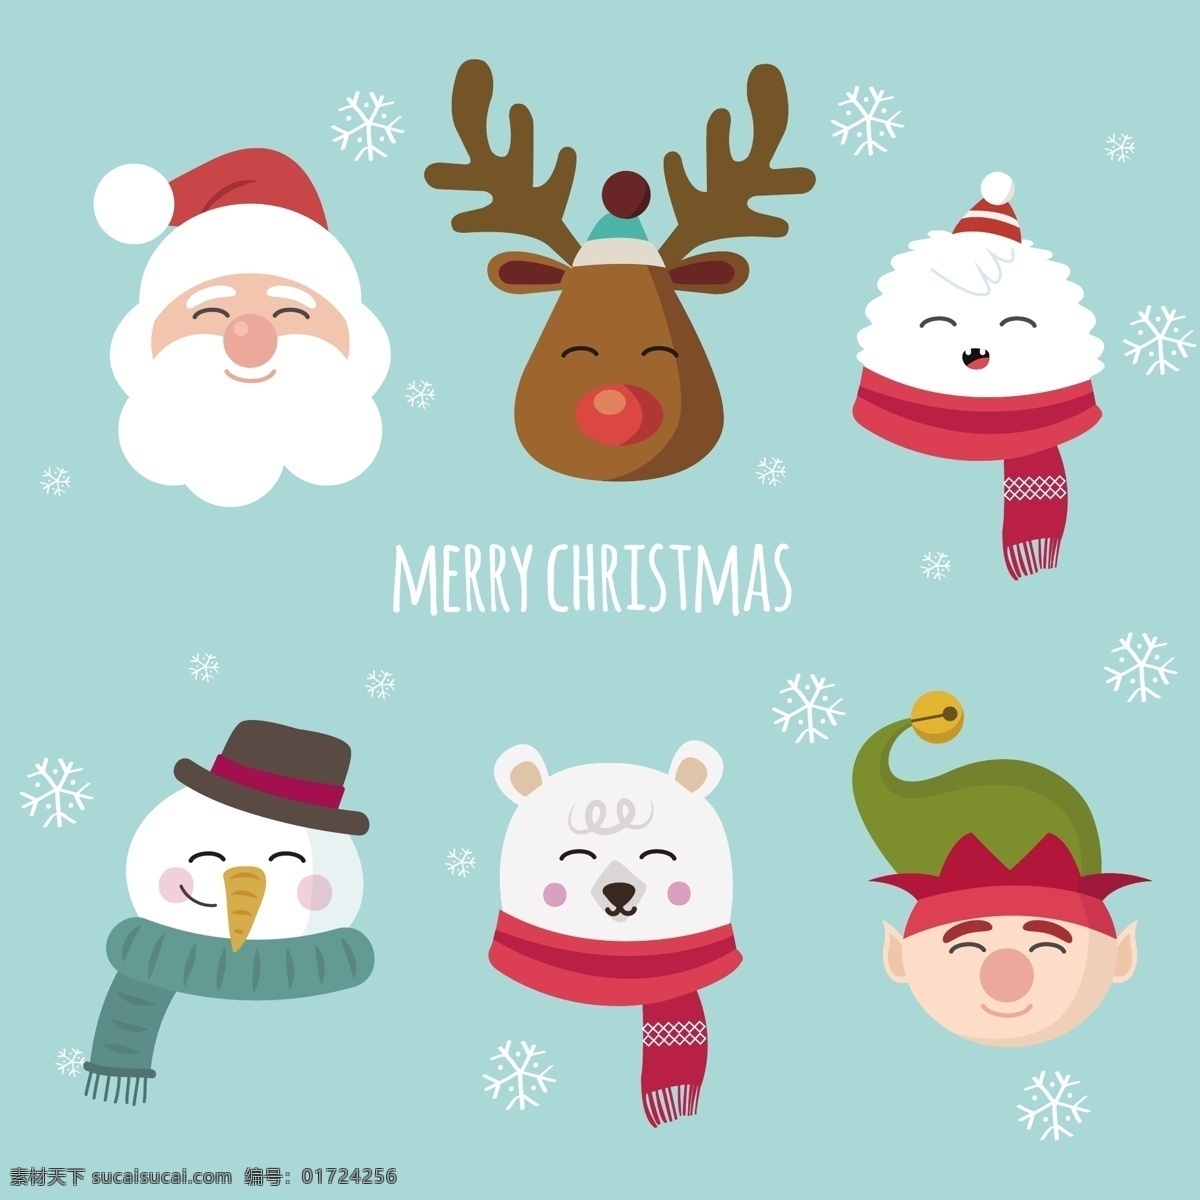 圣诞雪人图片 卡通人员 动漫人员 动漫人偶 卡通人偶 圣诞老人 雪人 女孩 人物剪影 麋鹿 狐狸 圣诞元素 圣诞人物 圣诞雪人 动漫动画